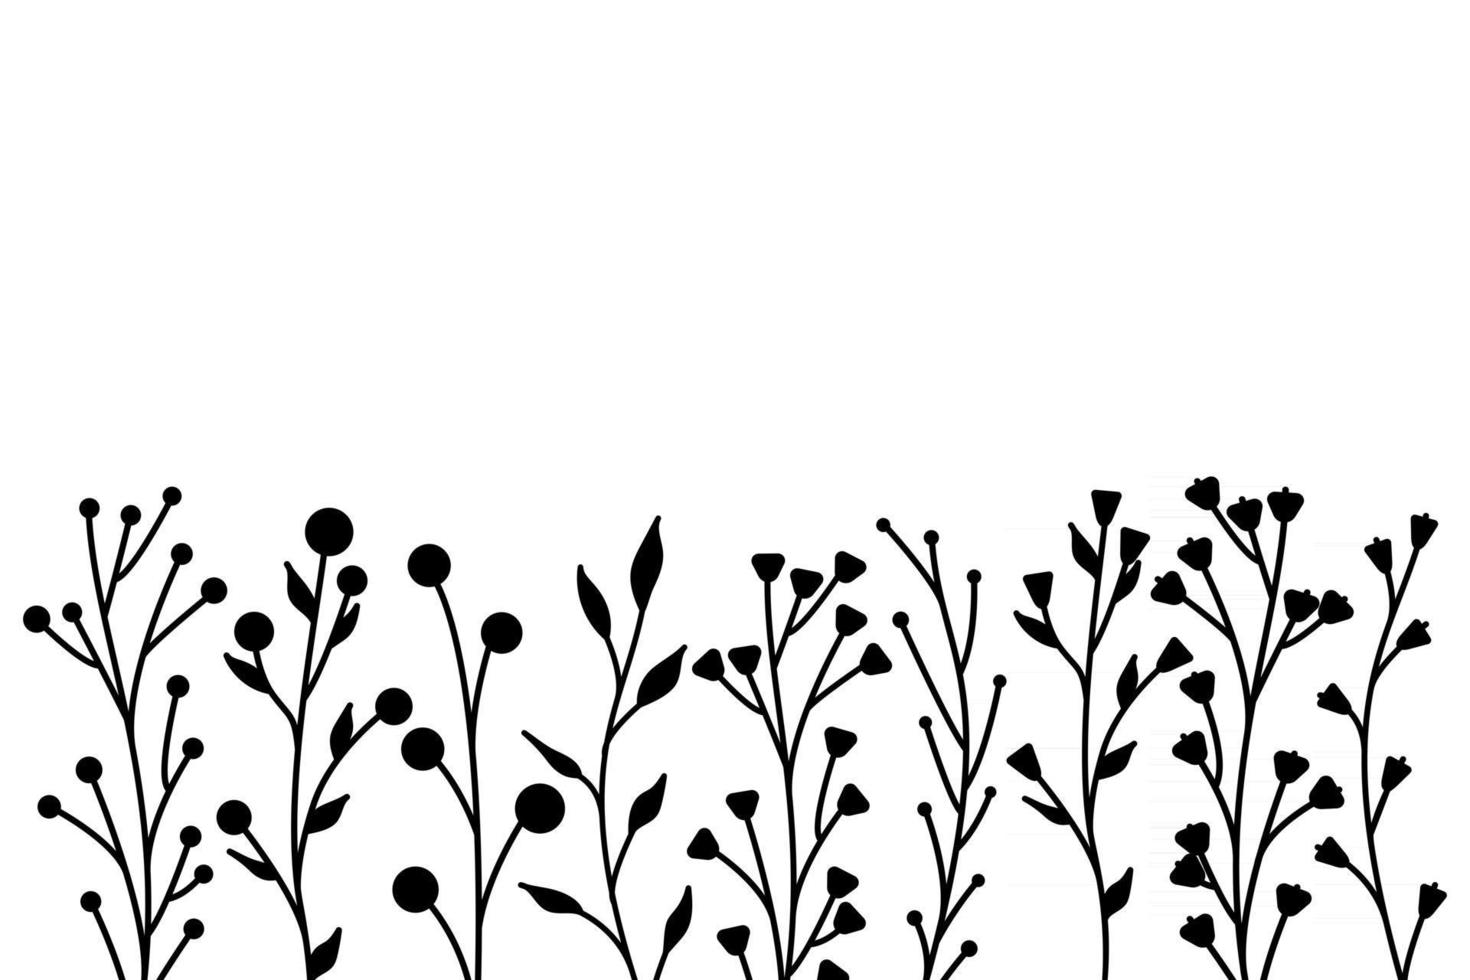 schwarze Silhouetten von Grasblumen und Kräutern minimalistisch einfache florale Elemente vektor